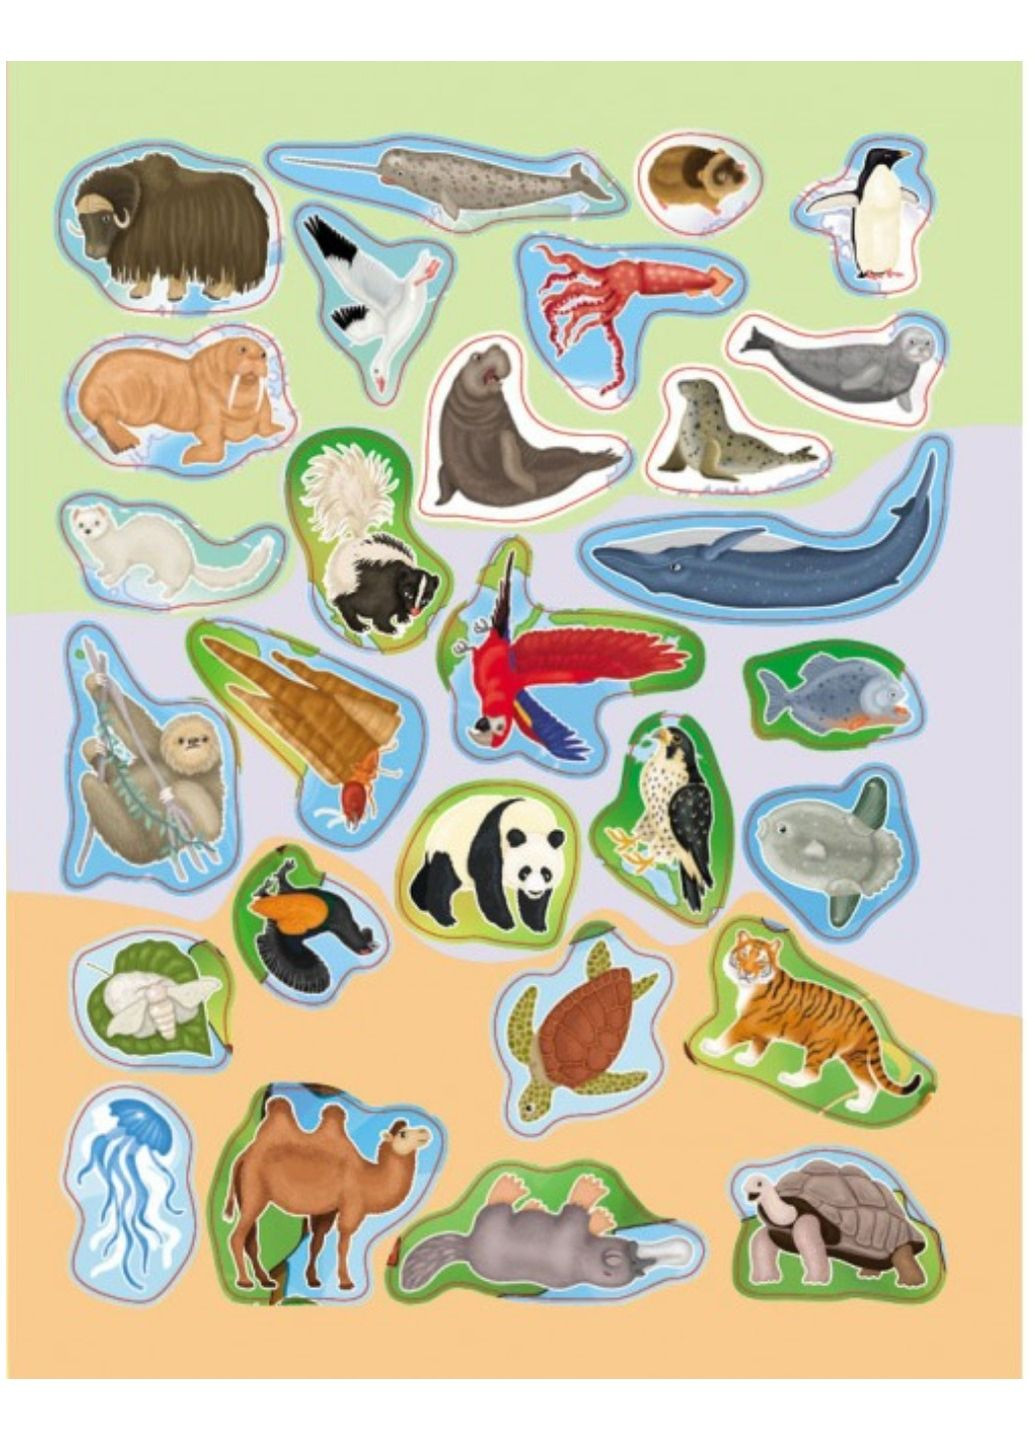 Атлас тварин. Великий альбом із 120 наліпками тварин усіх частин світу та океанів Землі Пегас (267816383)